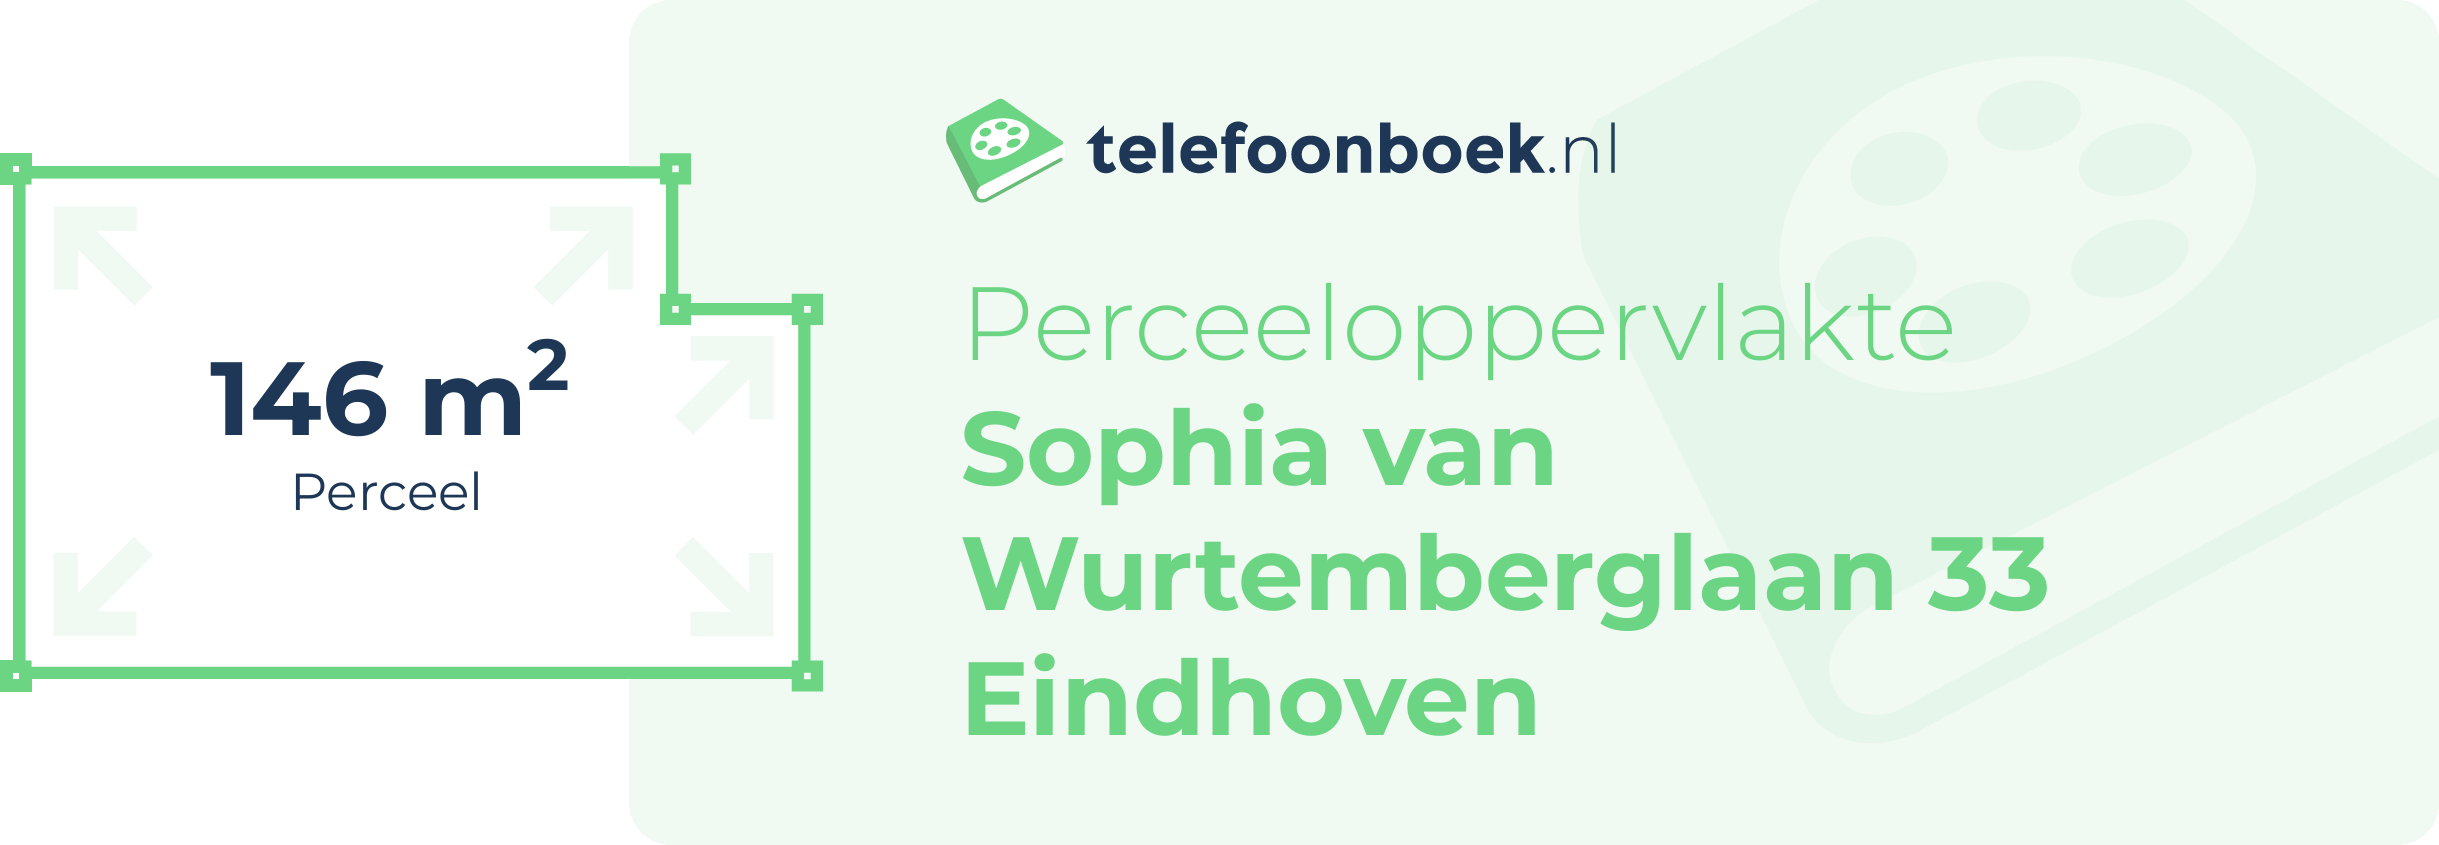 Perceeloppervlakte Sophia Van Wurtemberglaan 33 Eindhoven